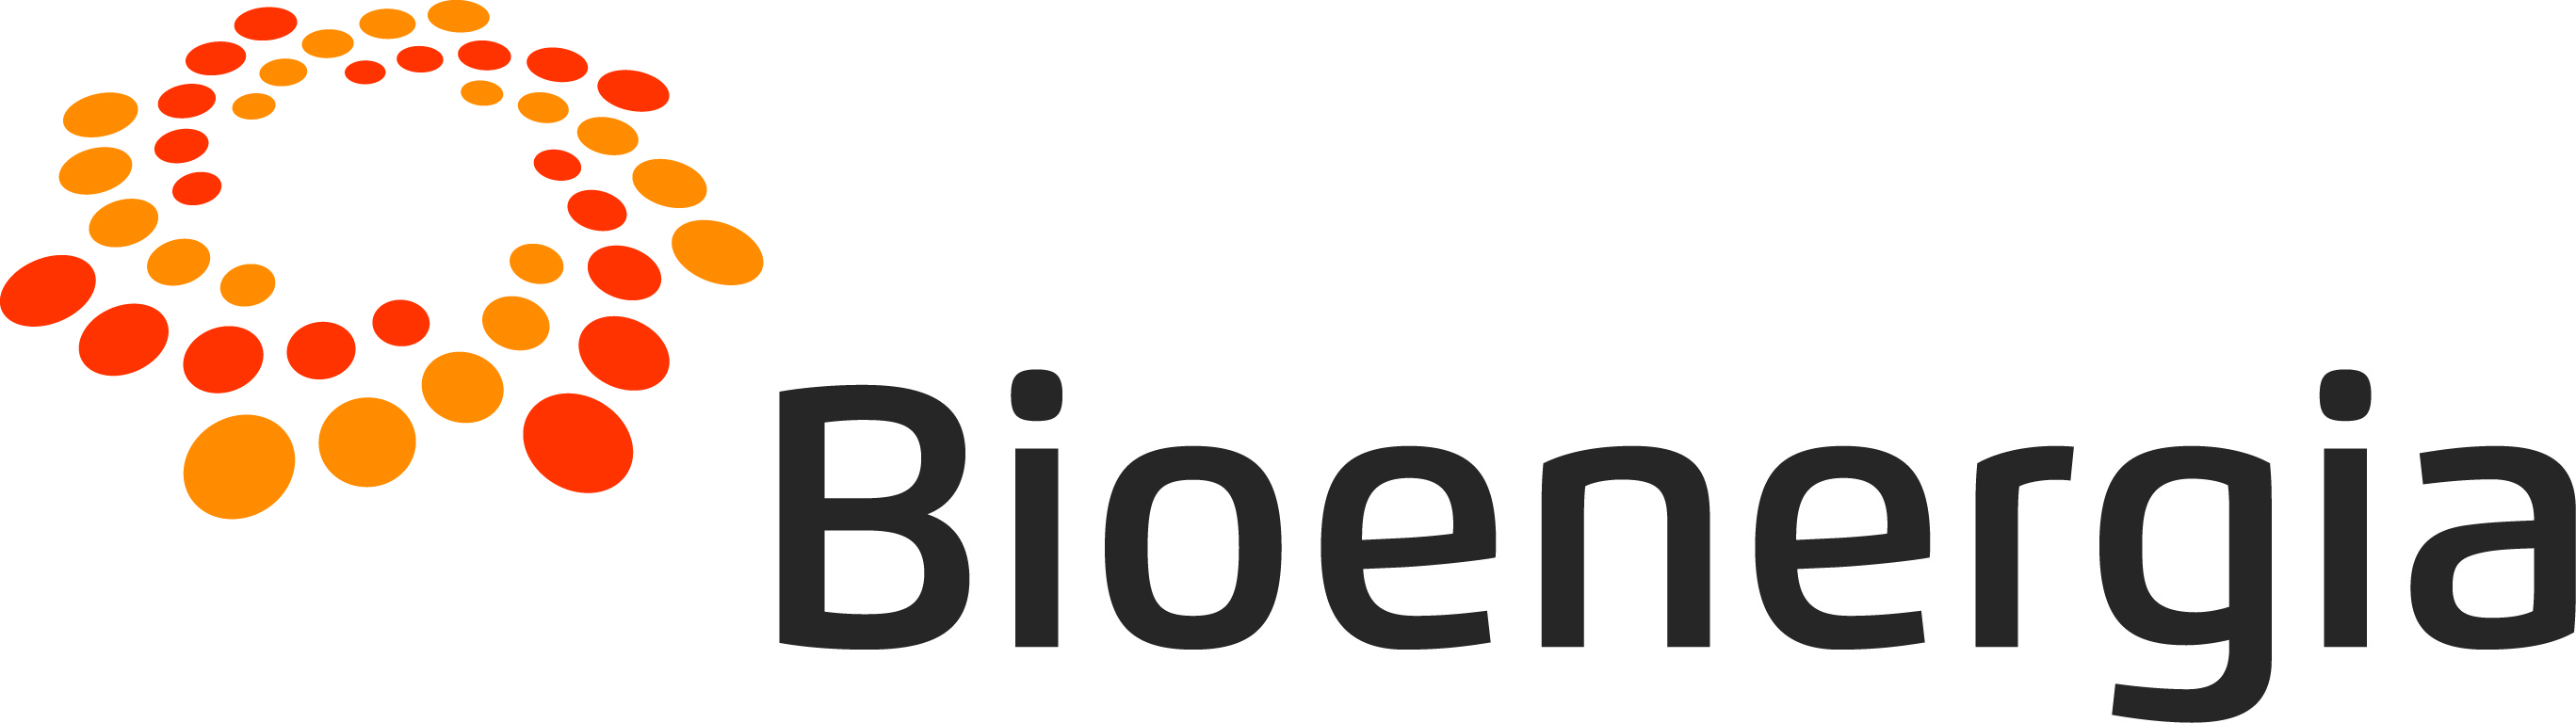 Bioenergia ry